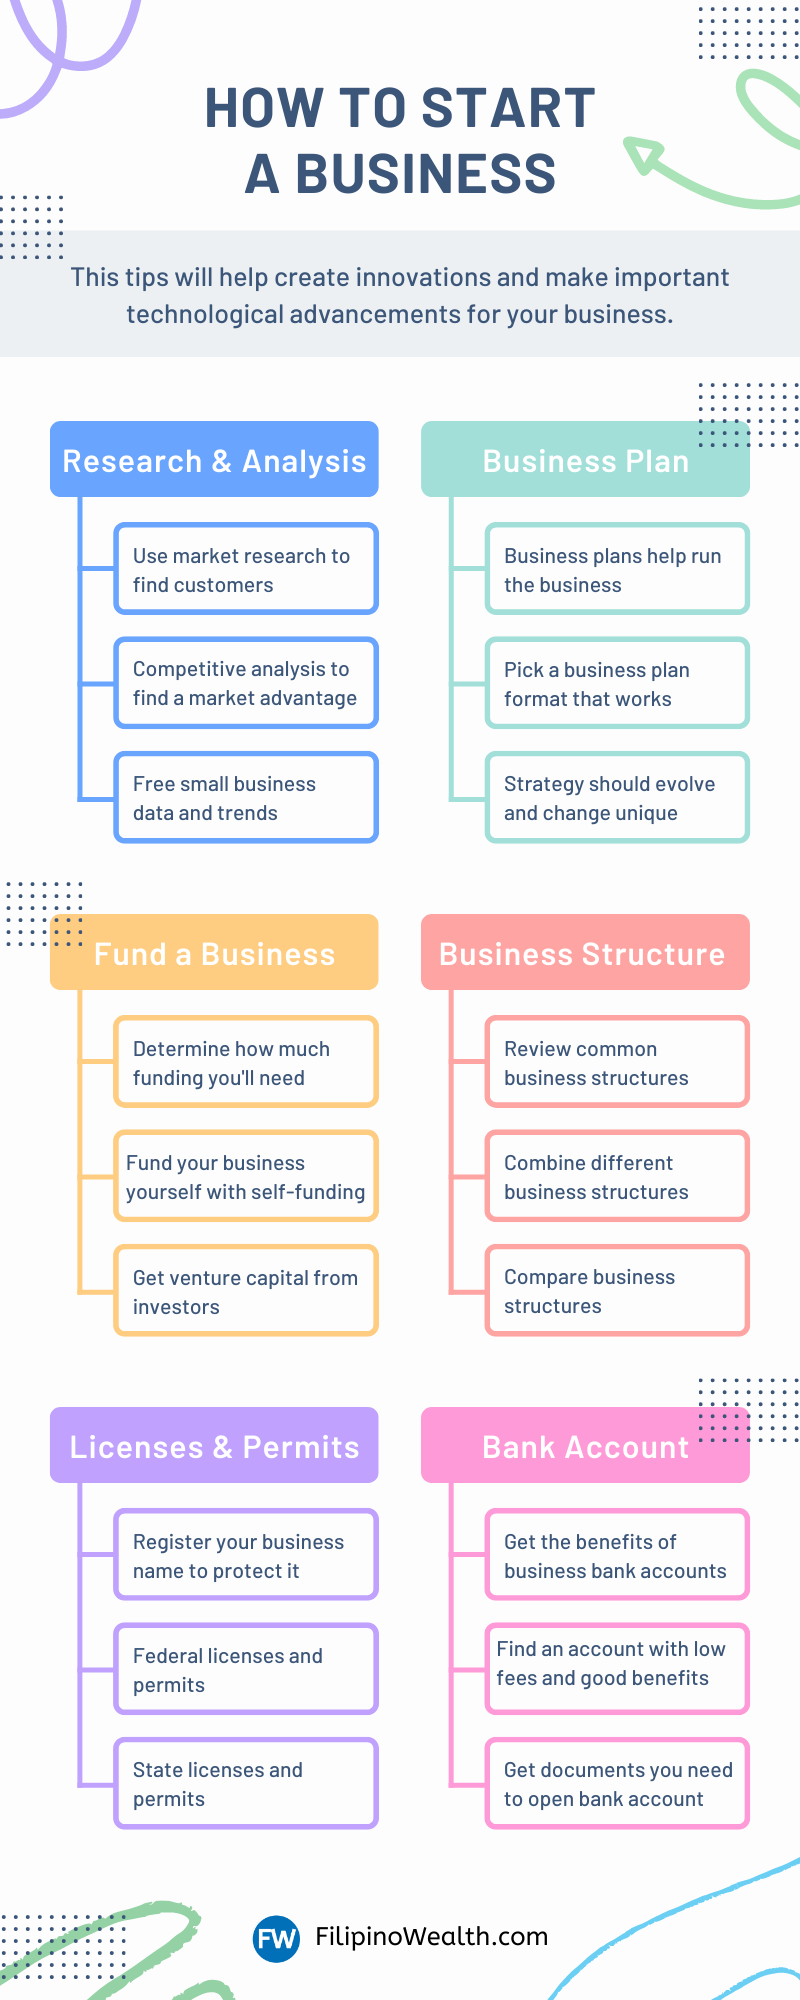 online business ideas philippines list